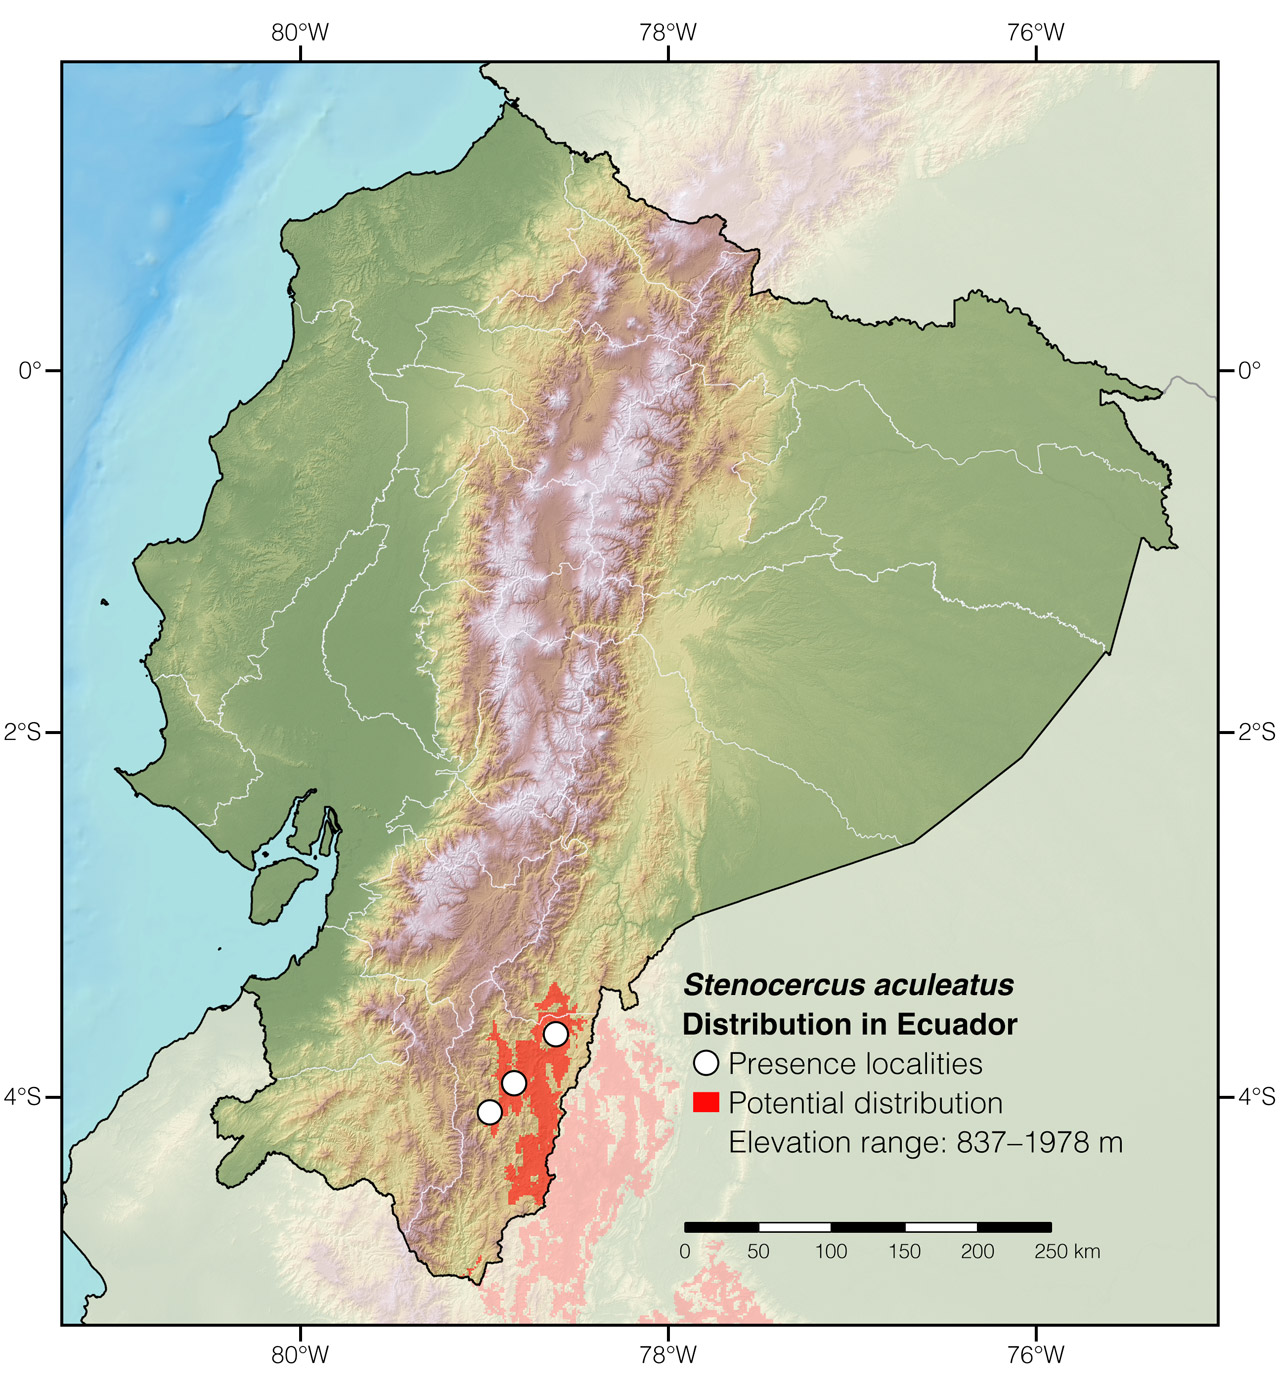 Distribution of Stenocercus aculeatus in Ecuador